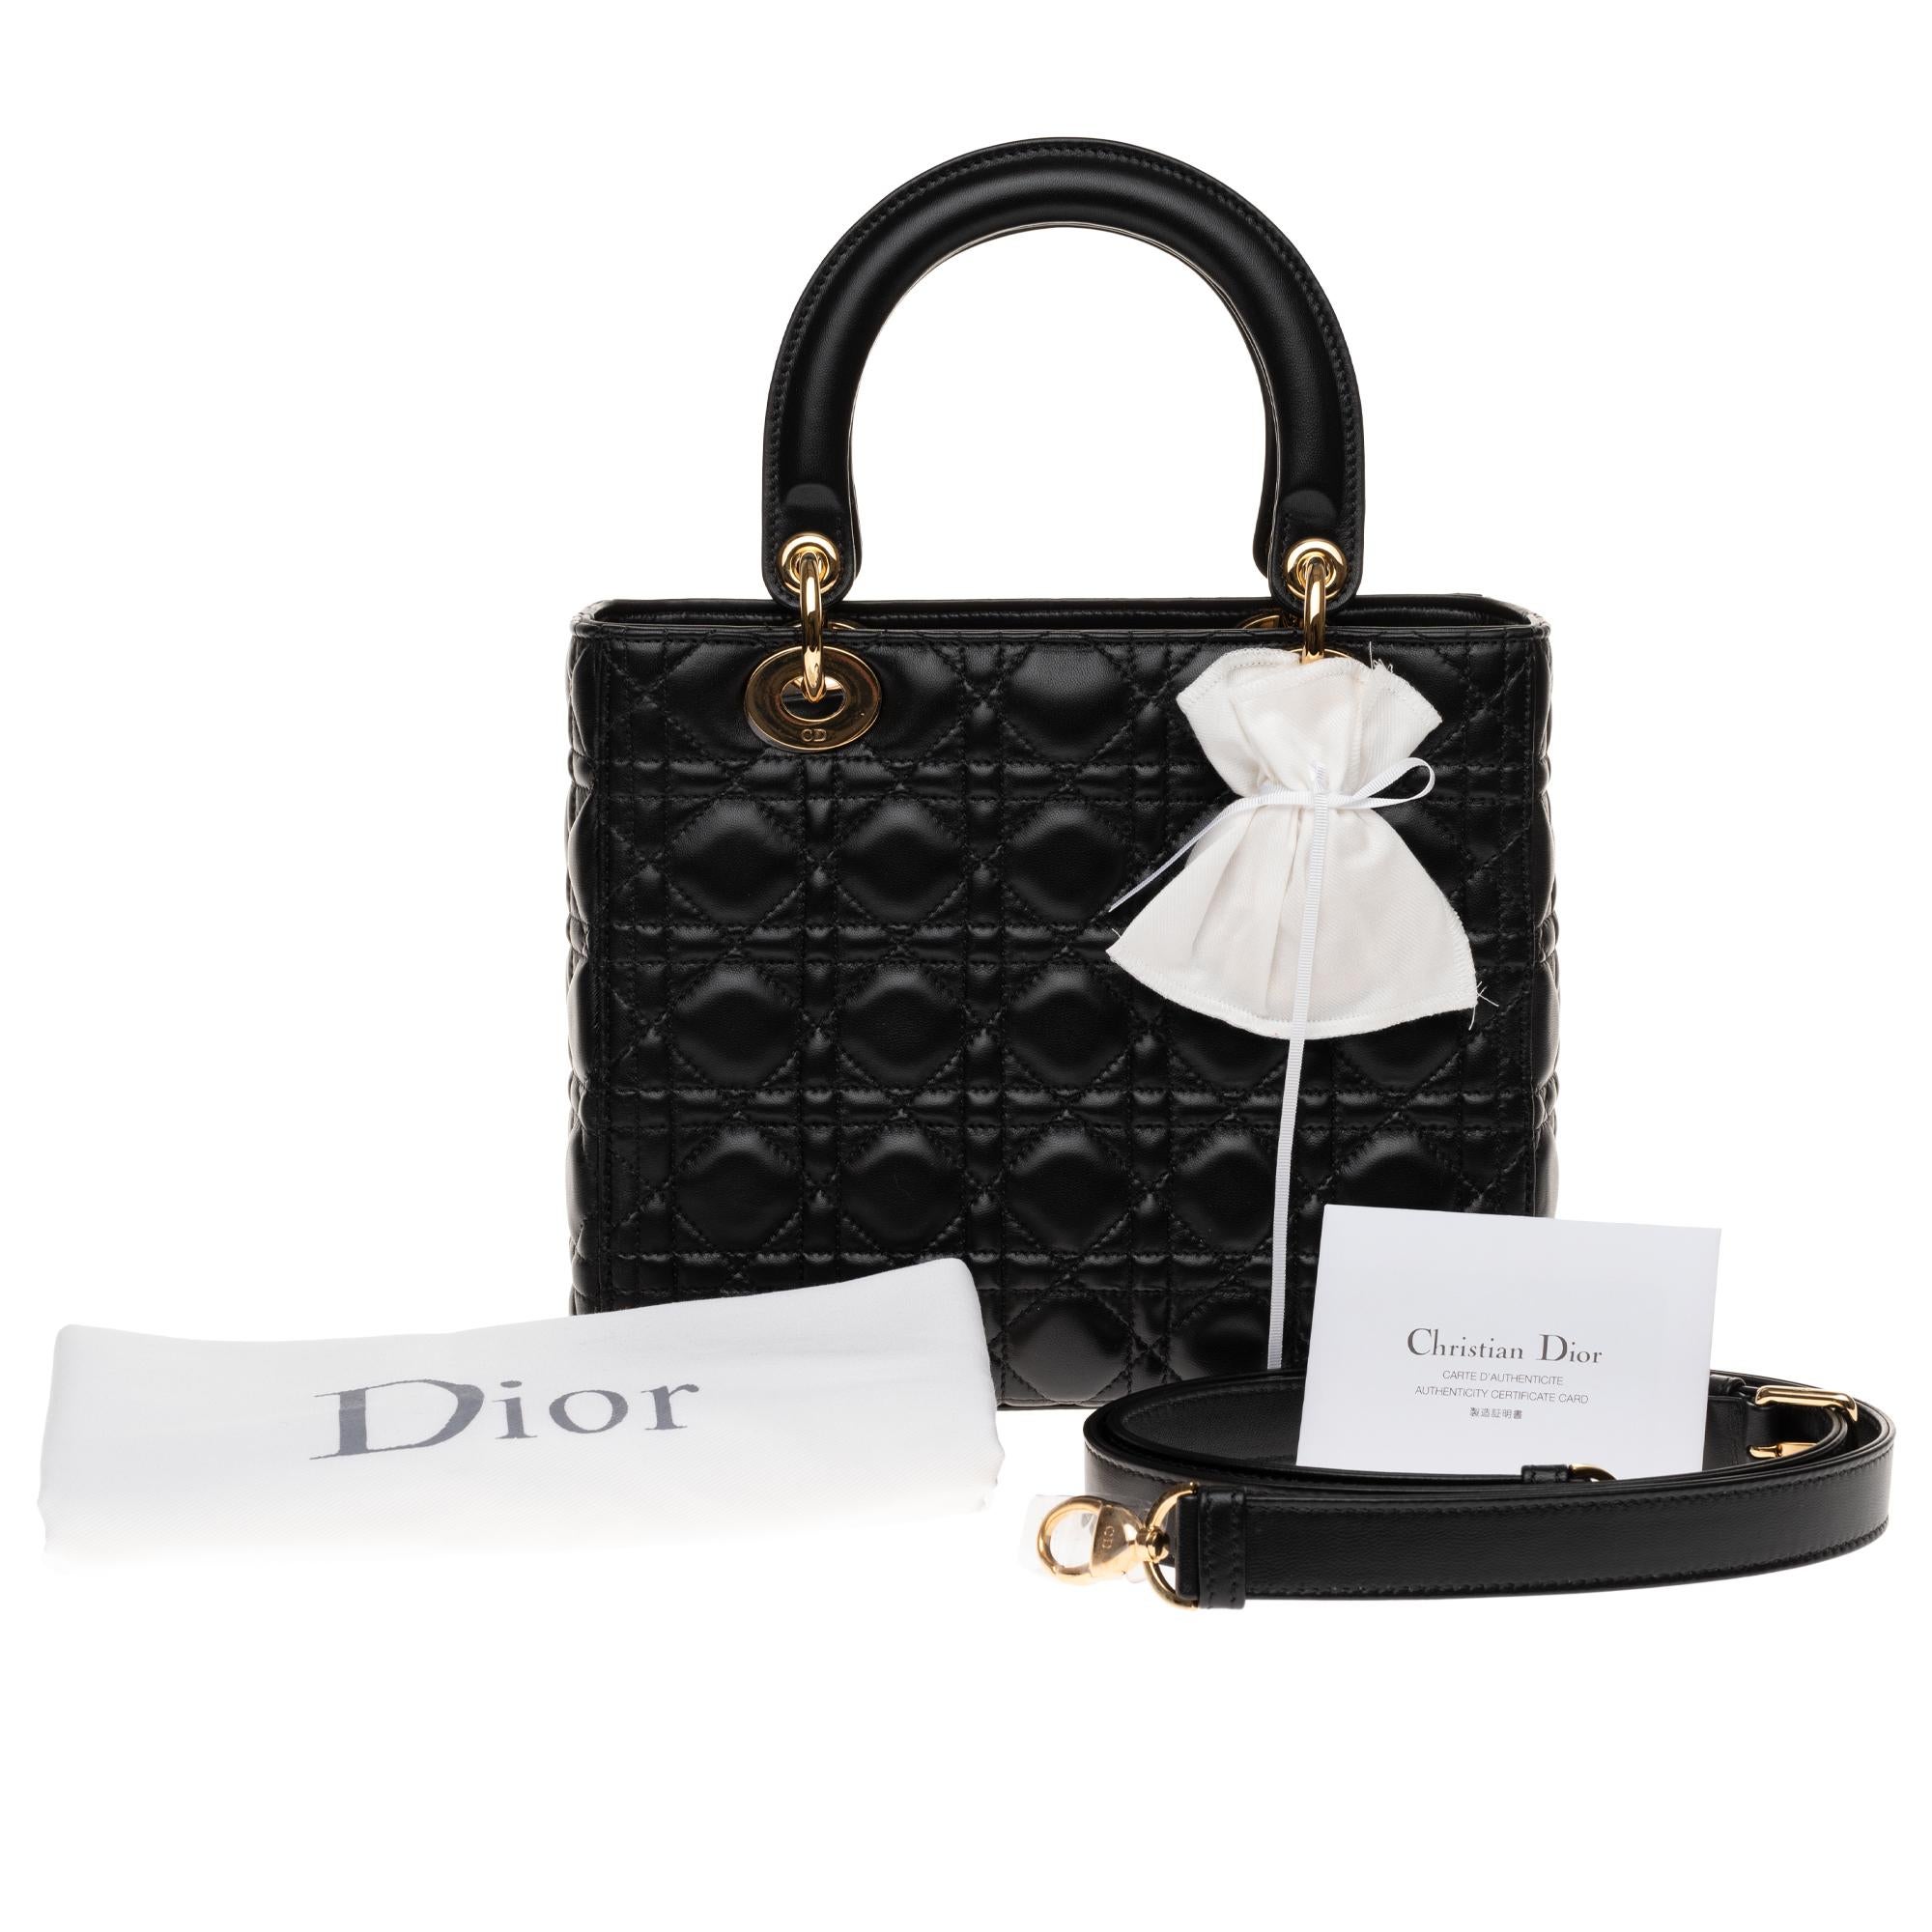  Christian Dior Lady Dior MM (Medium size) handbag in black cannage leather, GHW 4